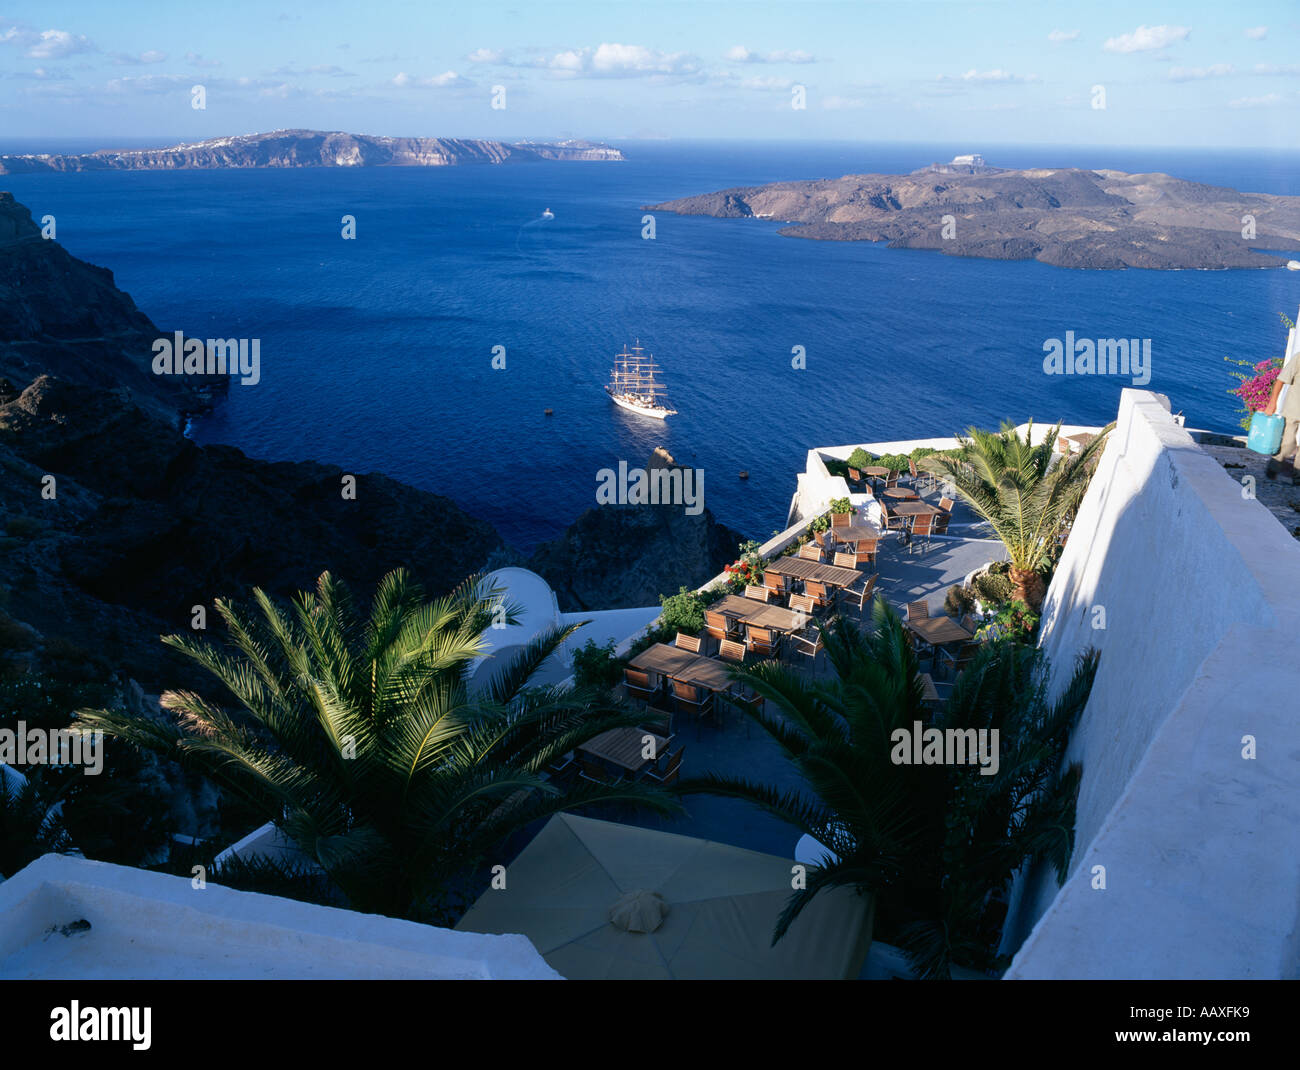 Großsegler verankert im Hafen von Fira auf der griechischen Insel Santorini Griechenland Stockfoto